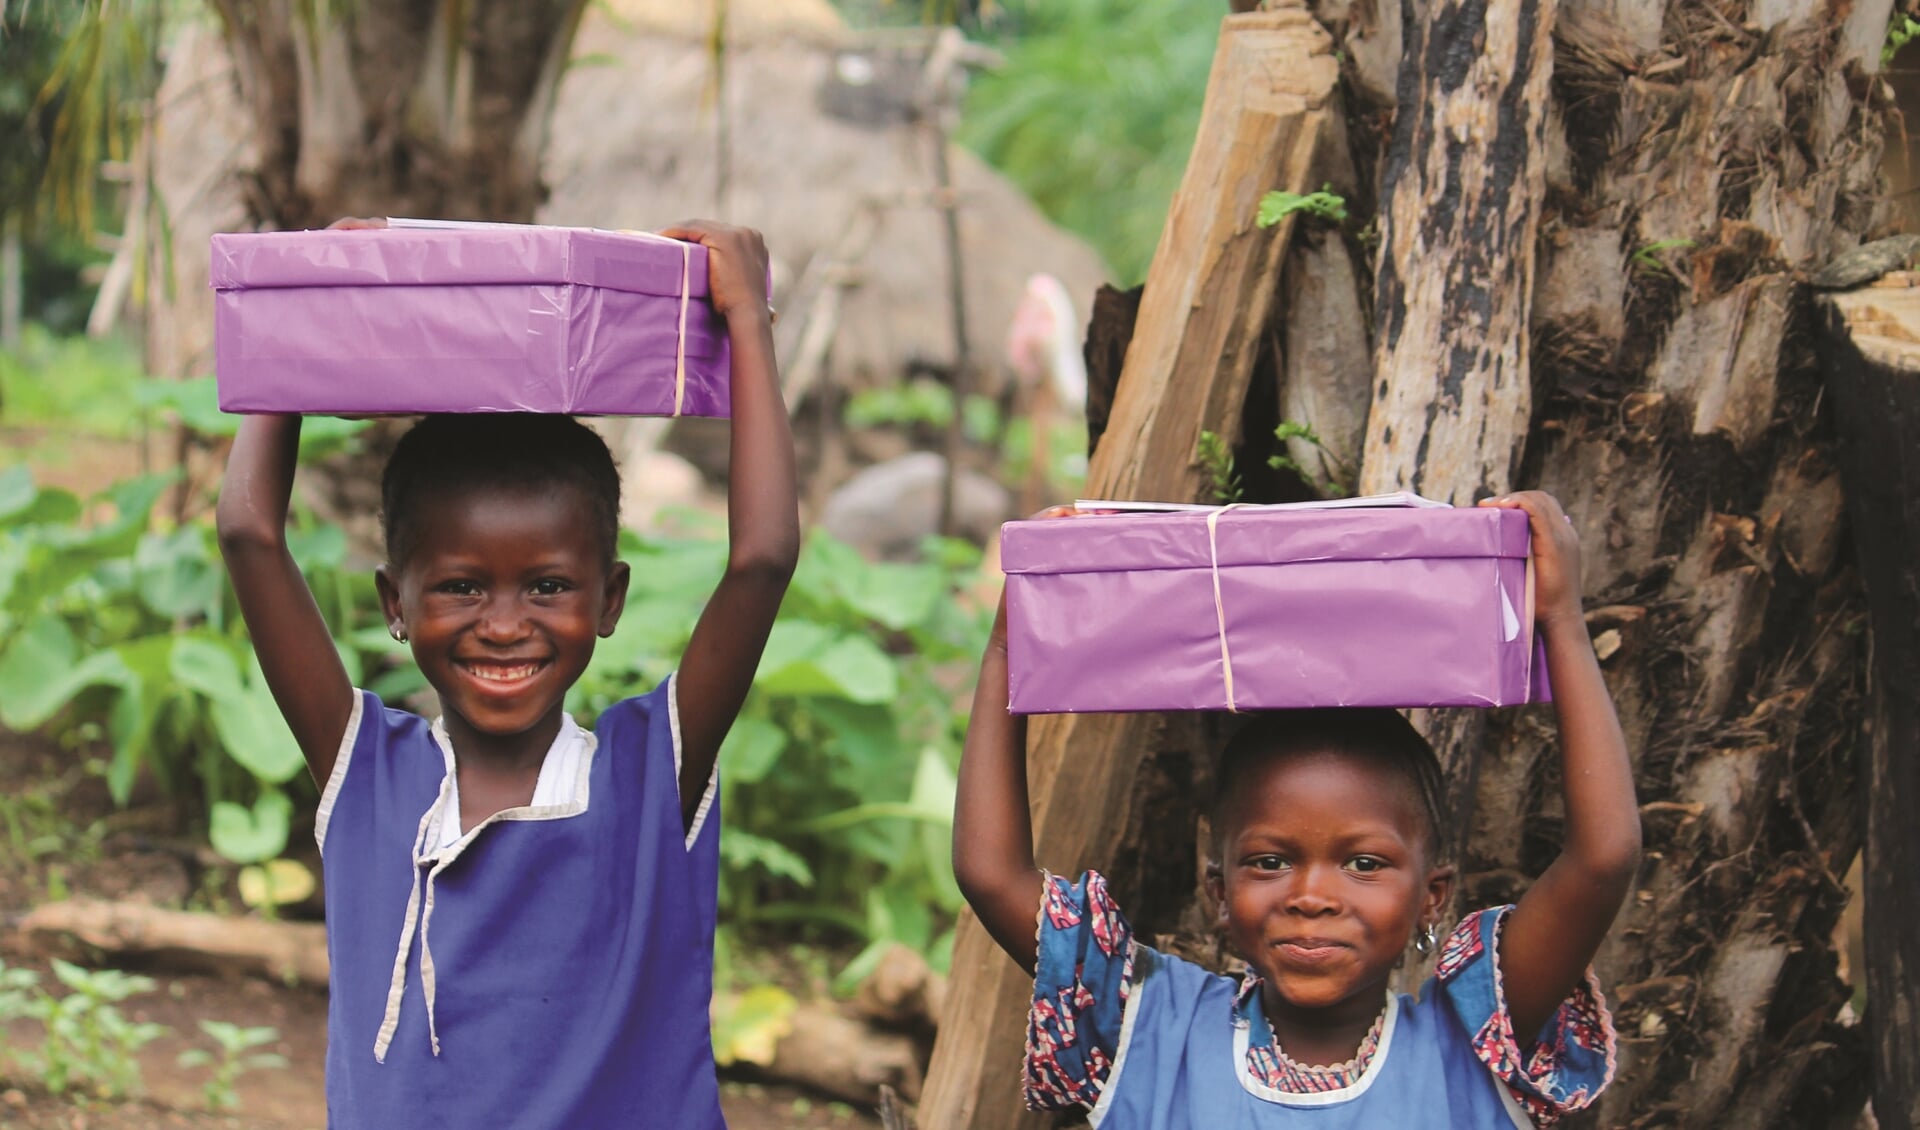 Maak kinderen blij met een doos vol verrassingen. Foto: Ton Bannink.